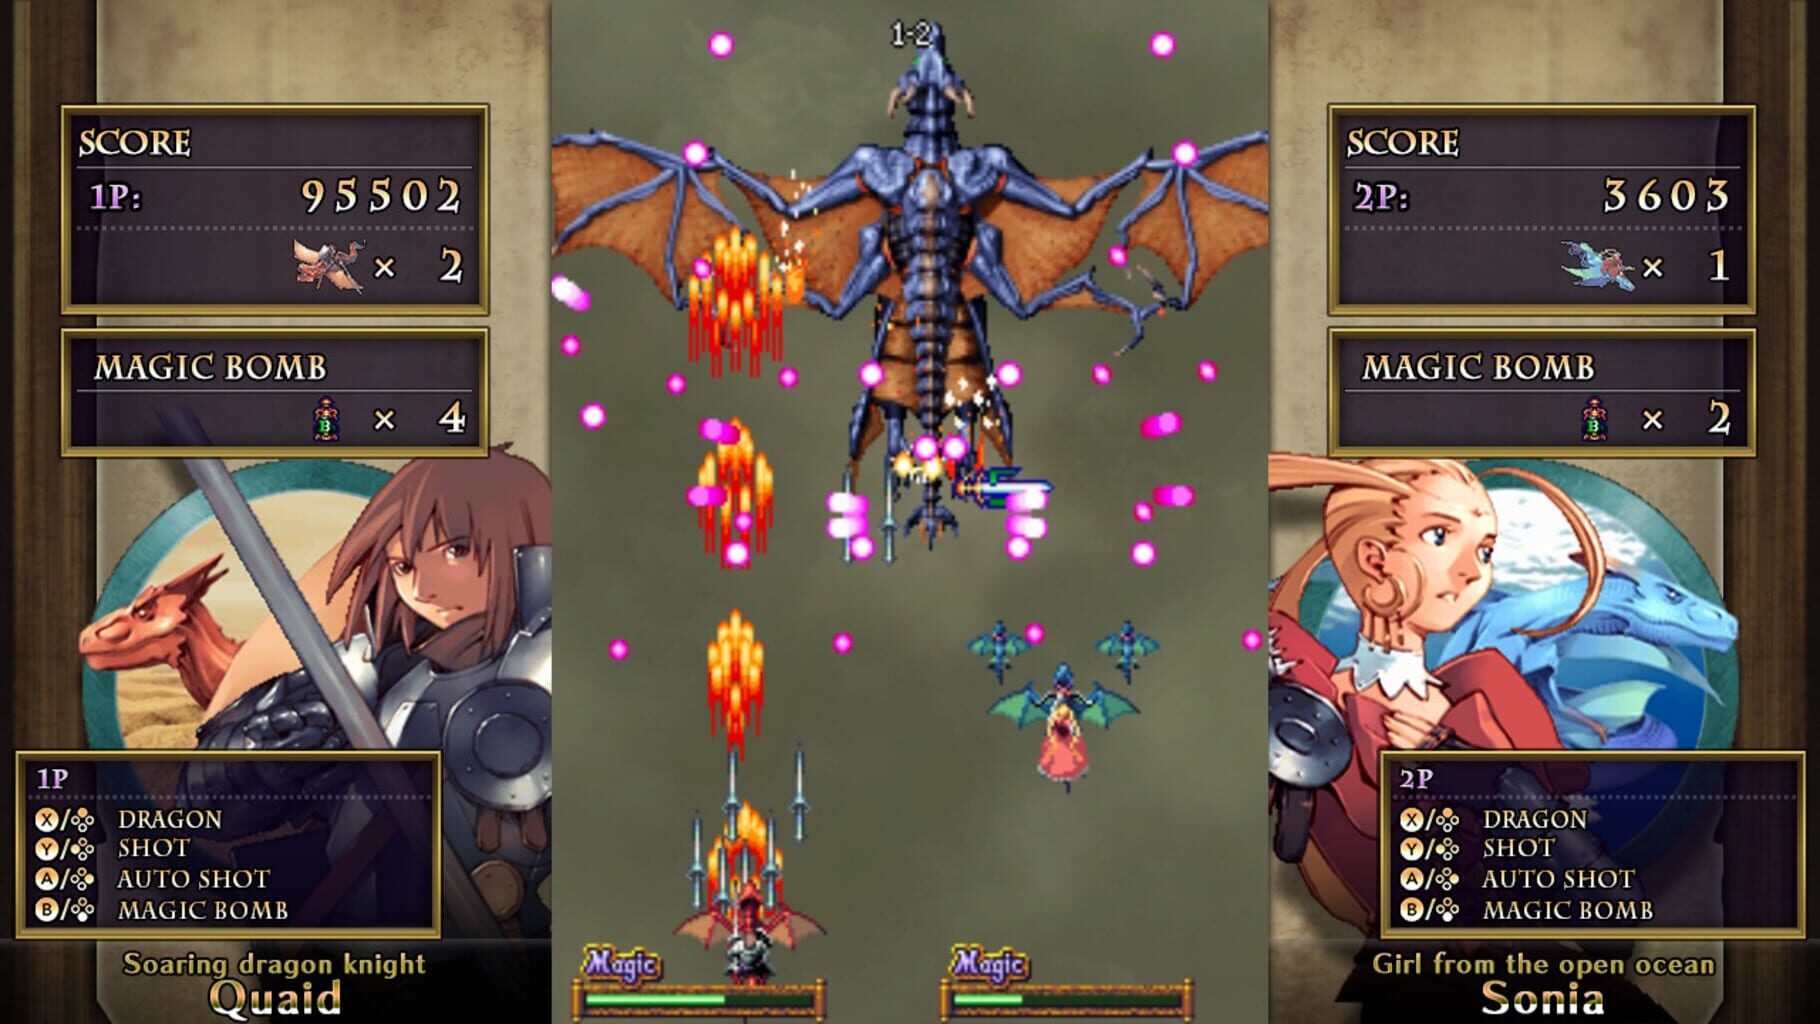 Dragon Blaze screenshot